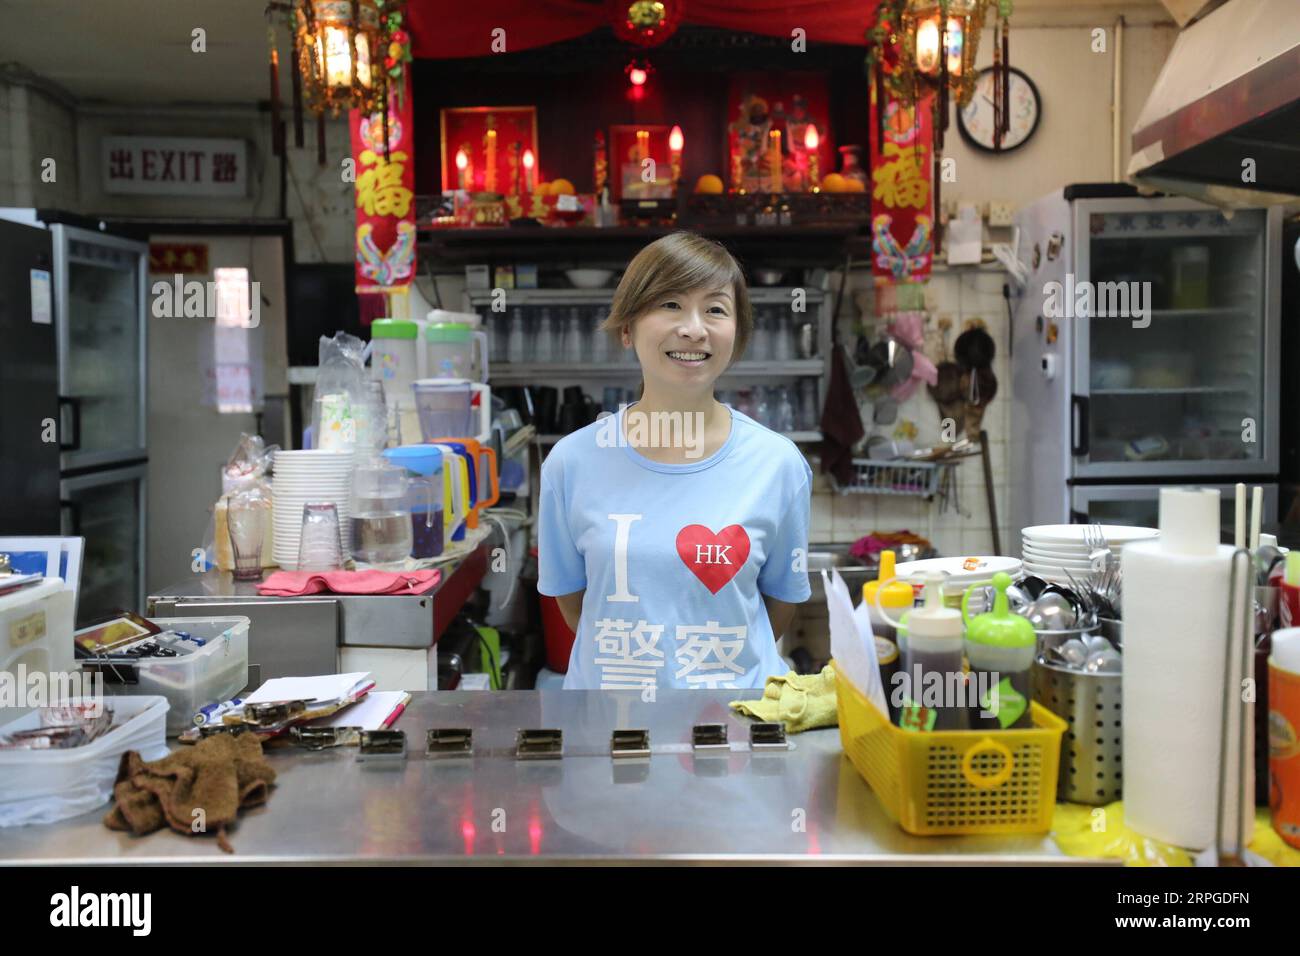 191012 -- HONG KONG, 12. Oktober 2019 -- Kate Lee, die ein T-Shirt mit dem I Love HK Polizeislogan trägt, wartet auf Gäste in ihrem Teestaurant in Kowloon, Südchinesisches Hongkong, 10. Oktober 2019. Eingebettet in den labyrinthartigen Fischmarkt des ruhigen Fischerdorfes Lei Yue Mun in Hong Kong, ist ein kleines, gemütliches Teestaurant unerwartet zu einem Leuchtturm des Mutes für gewöhnliche Menschen in Hongkong geworden, die Frieden inmitten des Chaos der letzten Zeit suchen. Nachdem sie Ende Juni Bilder postete, die die Polizei Hongkongs gegen einige radikale Demonstranten unterstützten, fand Kate Lee, die Eigentümerin des Teestaurants, ihre Co Stockfoto